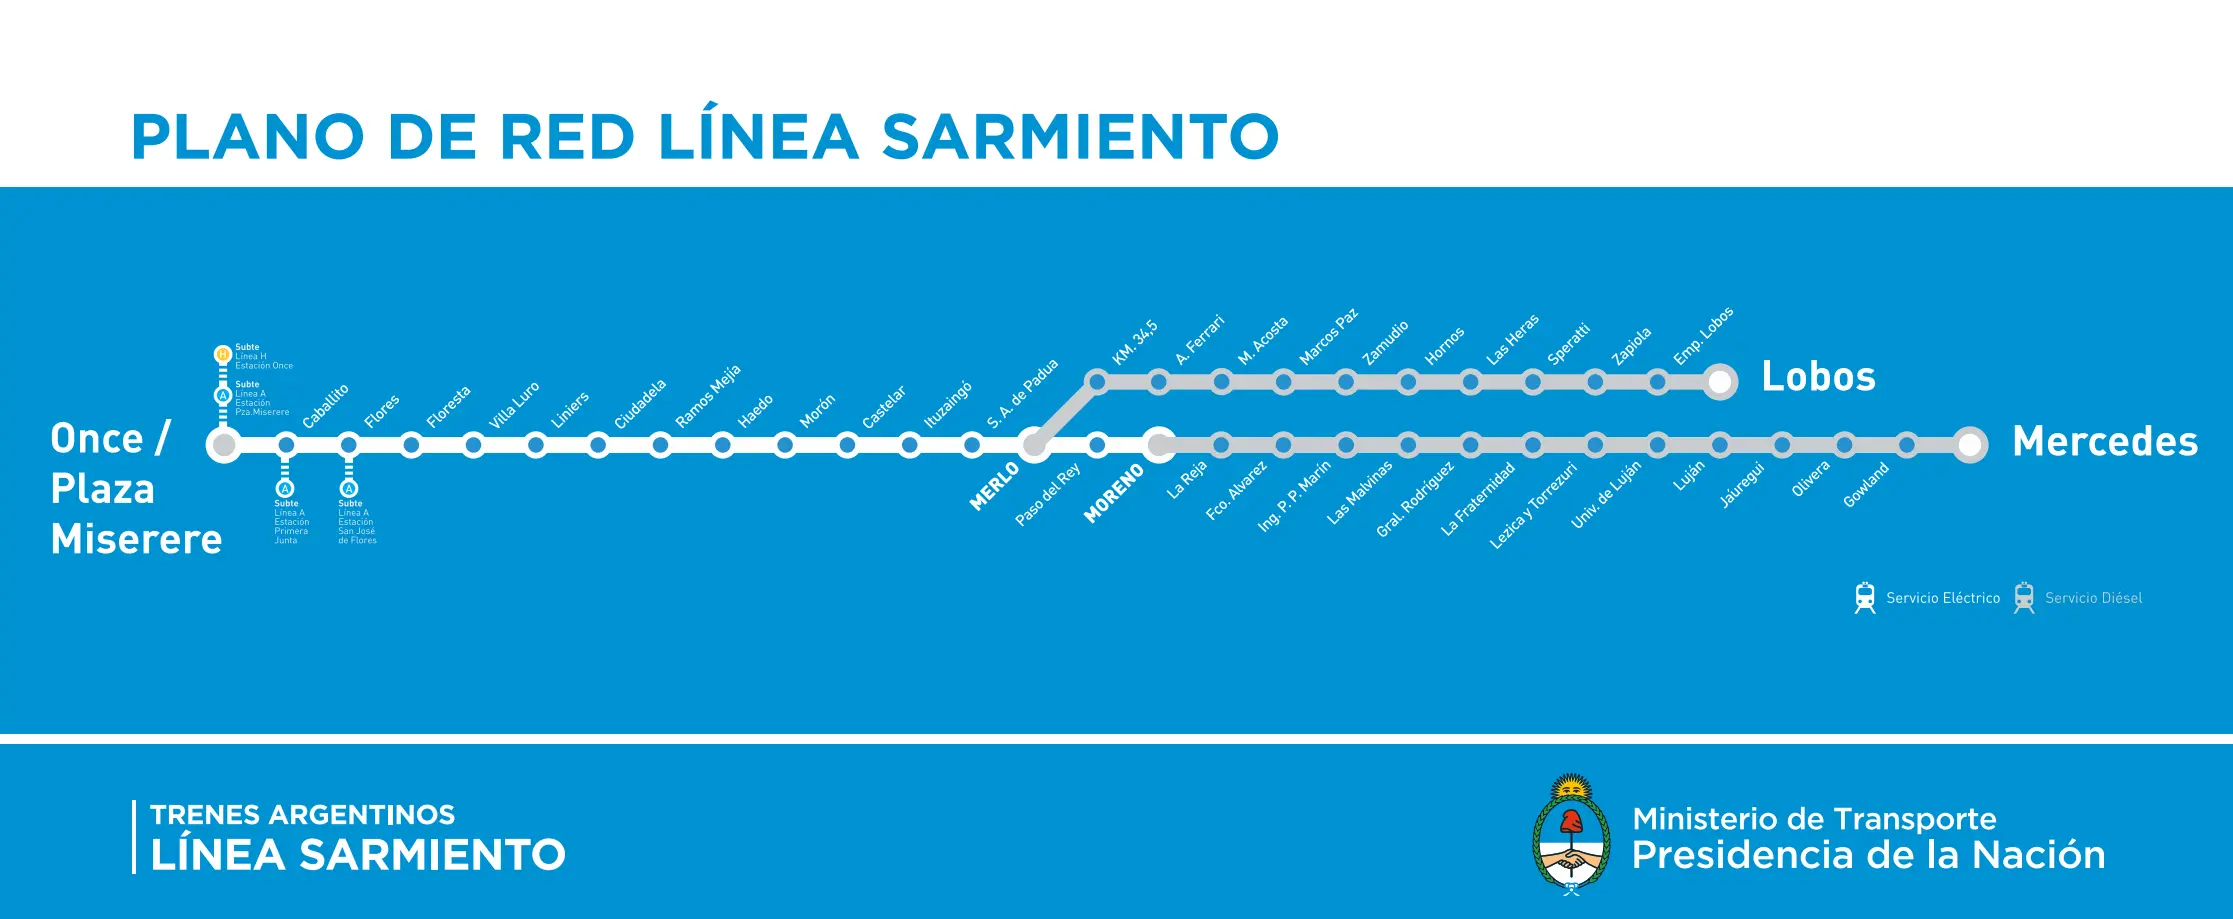 estaciones ferrocarril sarmiento - Cuántas estaciones tiene la línea de ferrocarril Sarmiento que va desde 11 a Mercedes